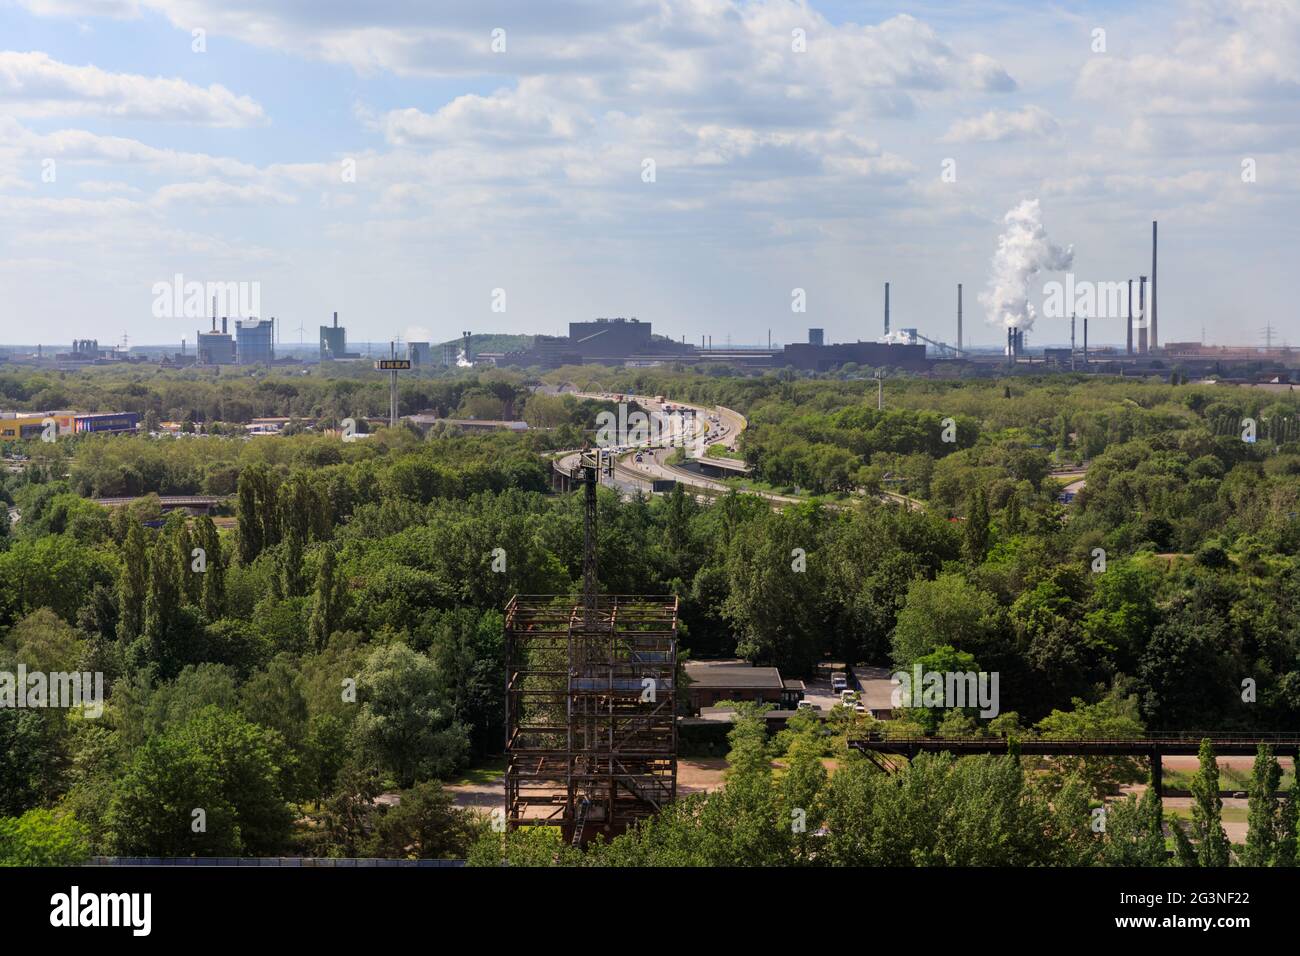 Blick auf das Kraftwerk Hamborn und thyssenkrupp Steel, Landcape Duisburg, Ruhr, NRW, Deutschland Stockfoto